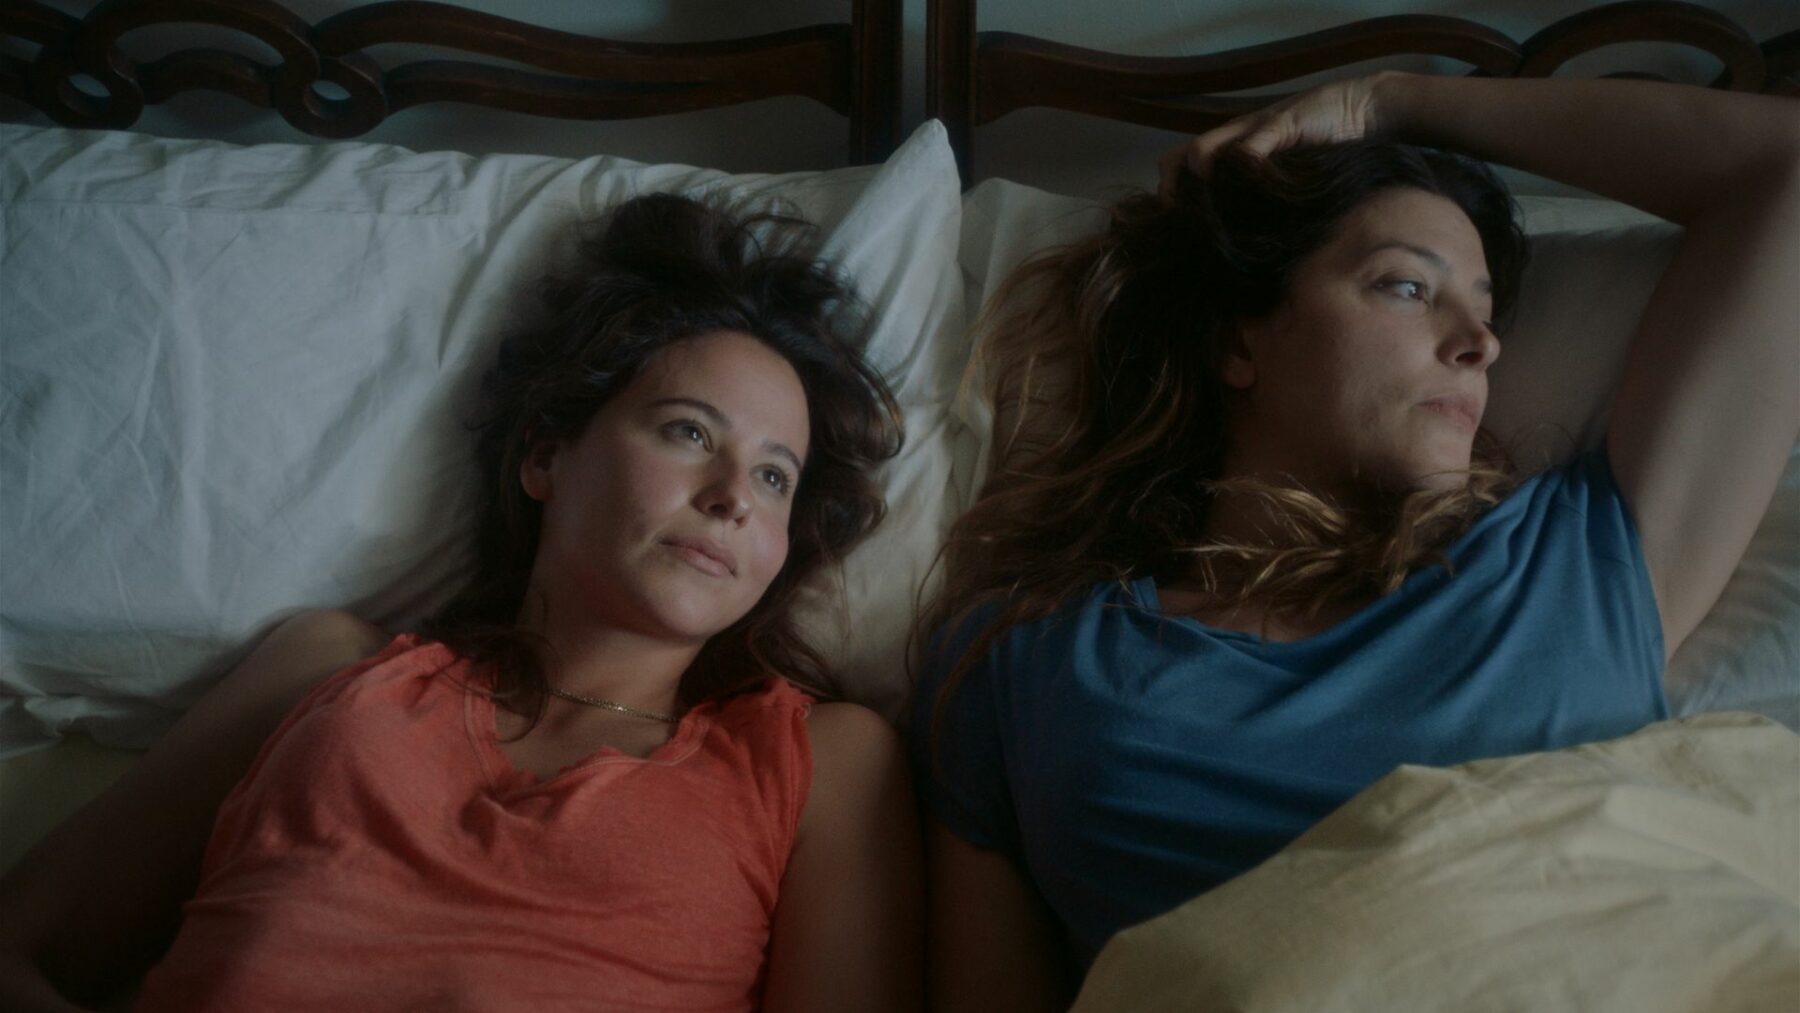 Kadr przedstawia dwie kobiety leżące w łóżku.